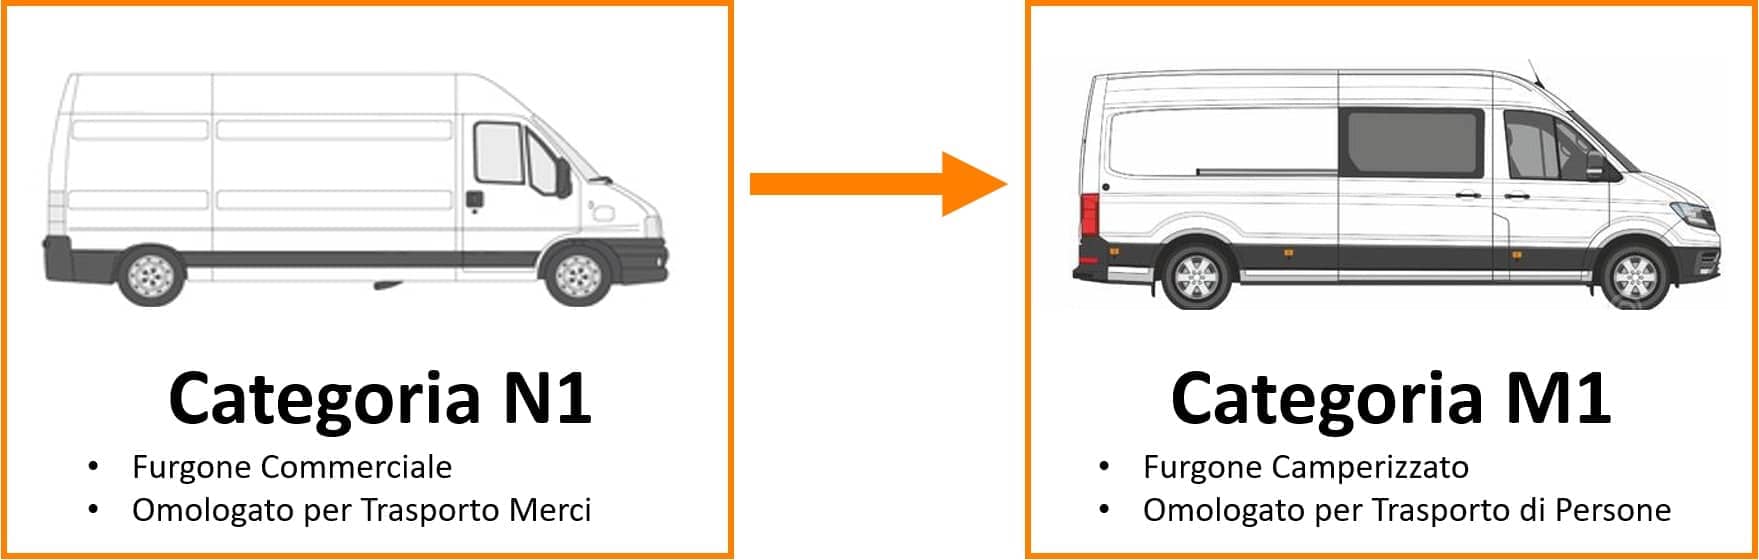 omologare un furgone camperizzato da n1 a m1 in italia